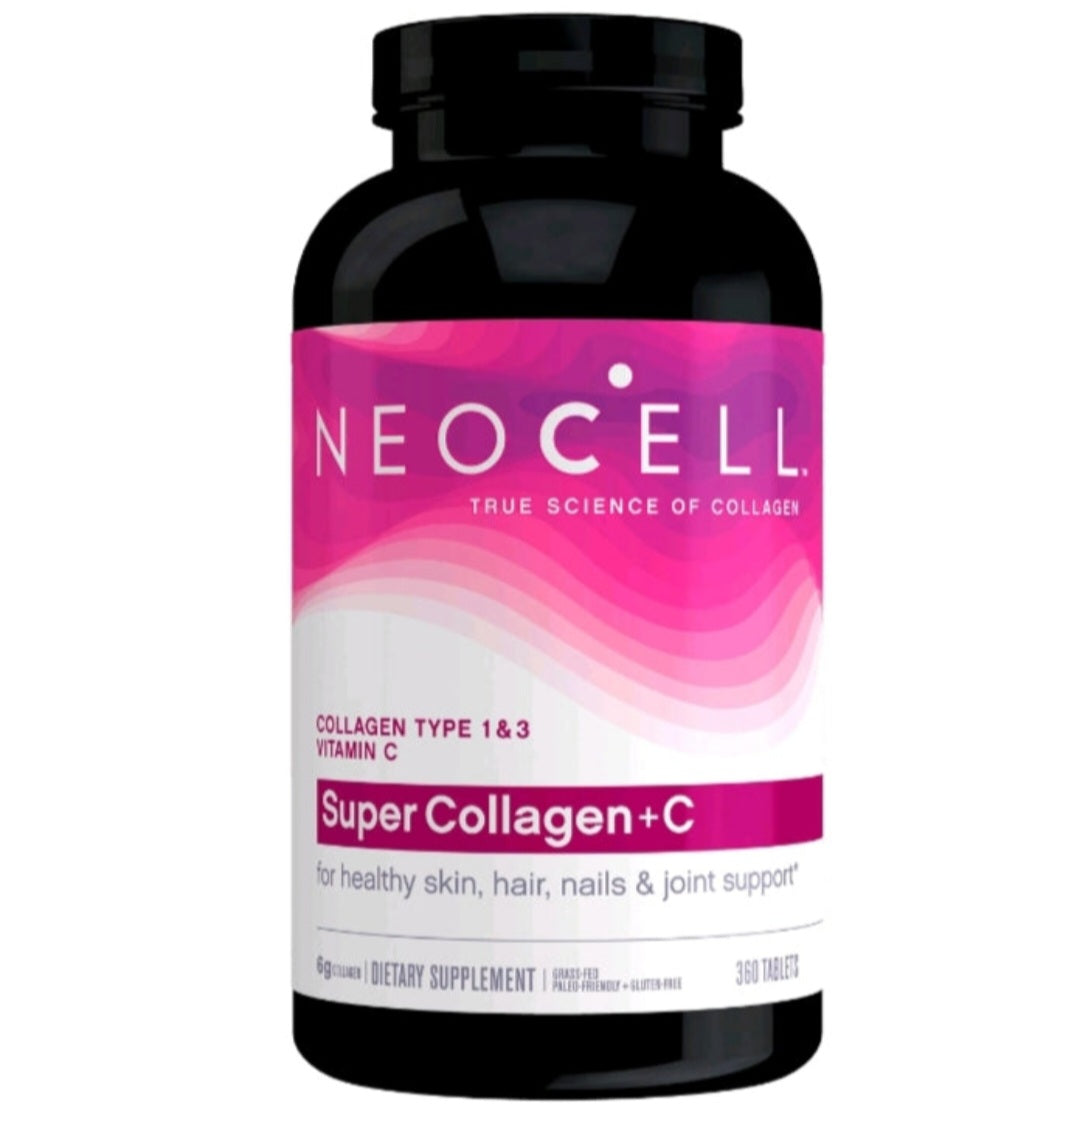 Neocell Super Collagen + Vitamin C and Biotin